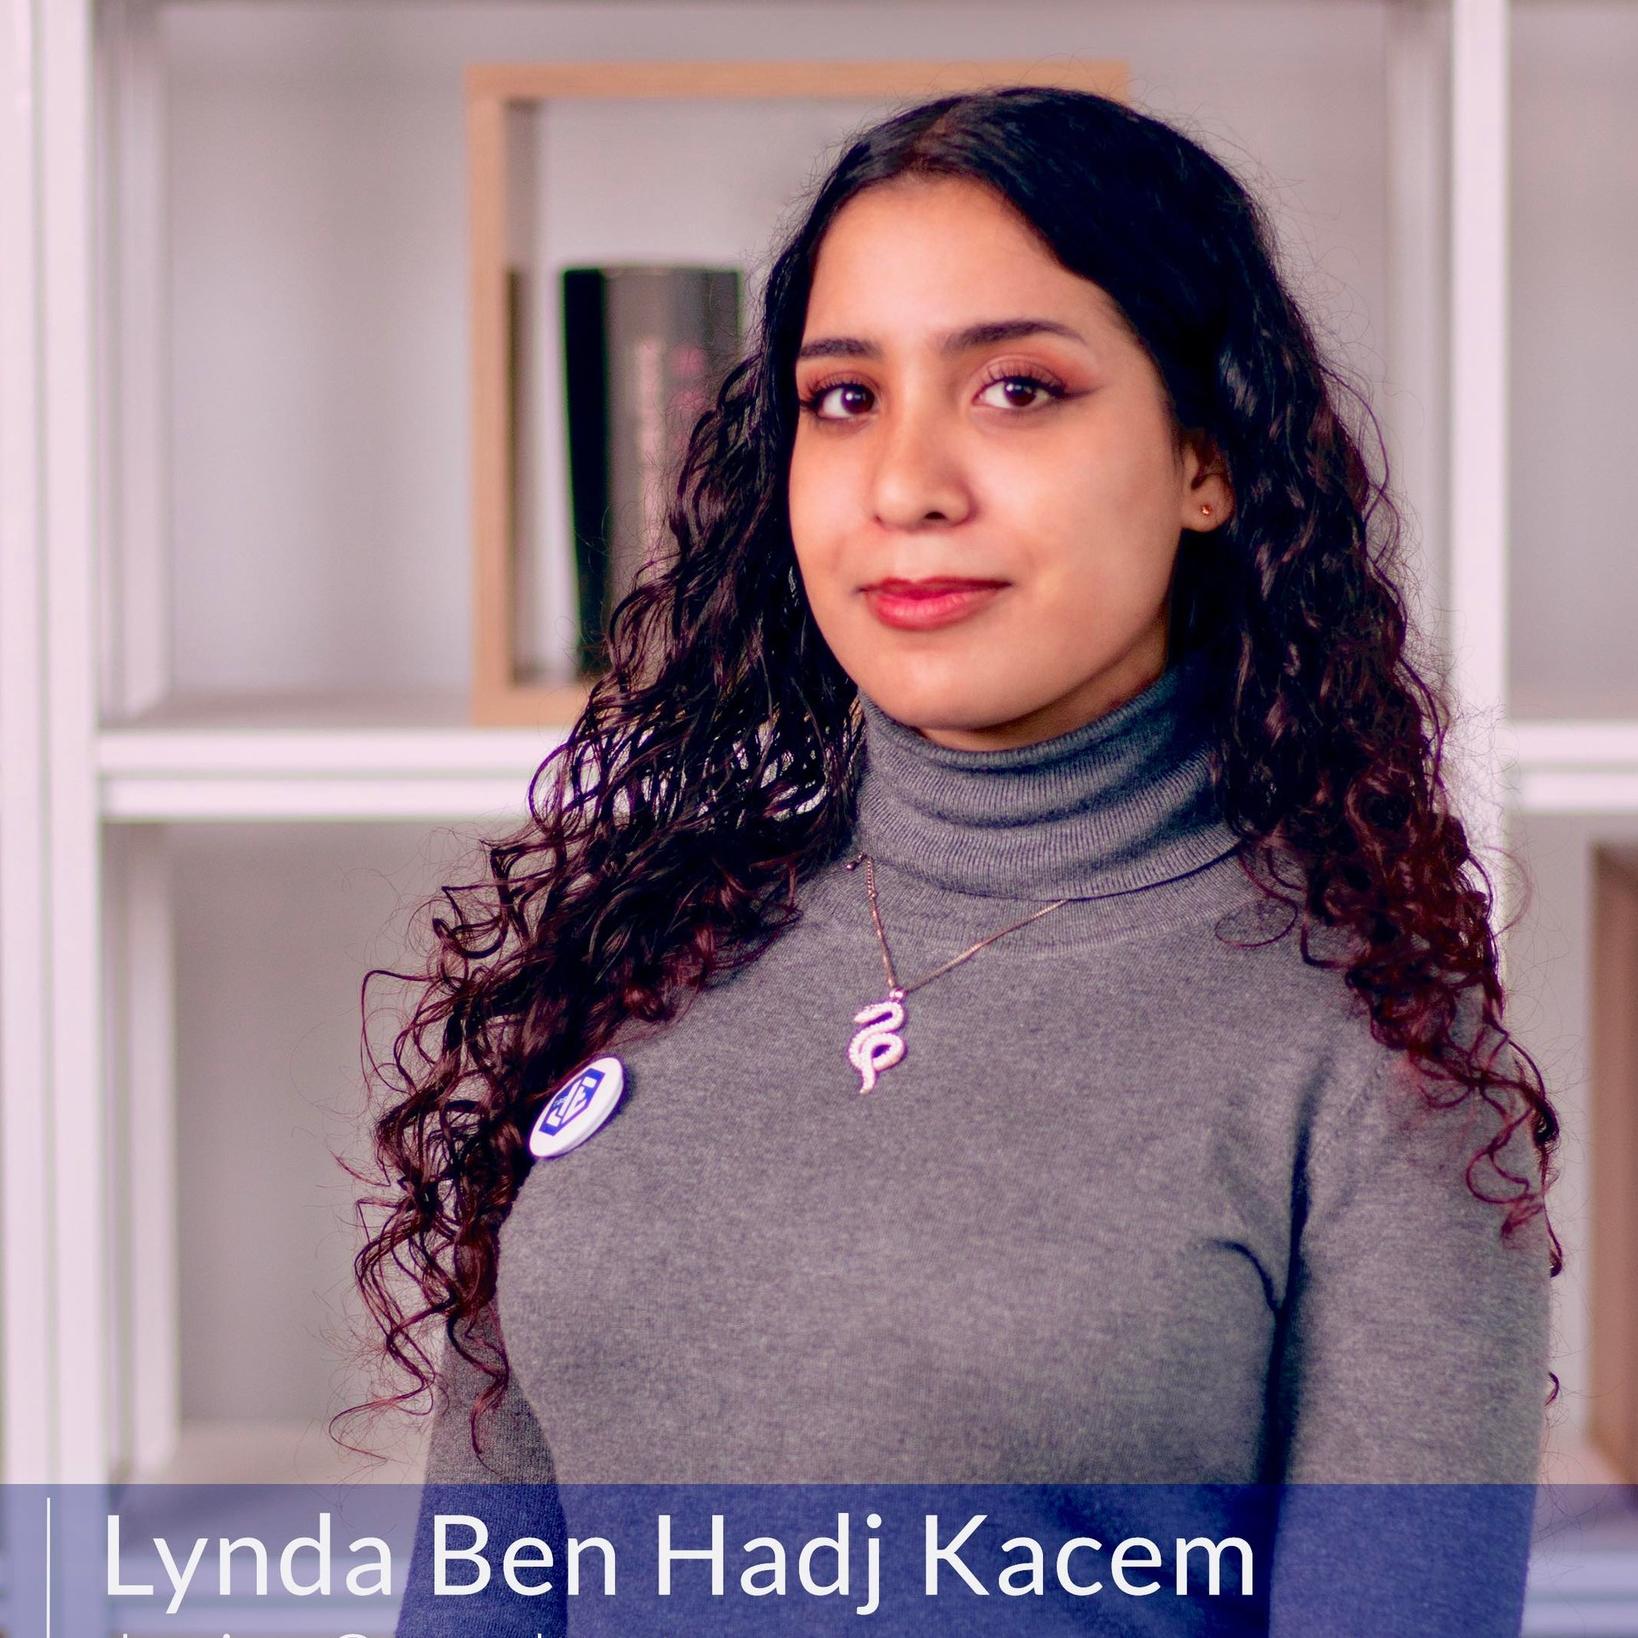 Lynda Ben Hadj Kacem